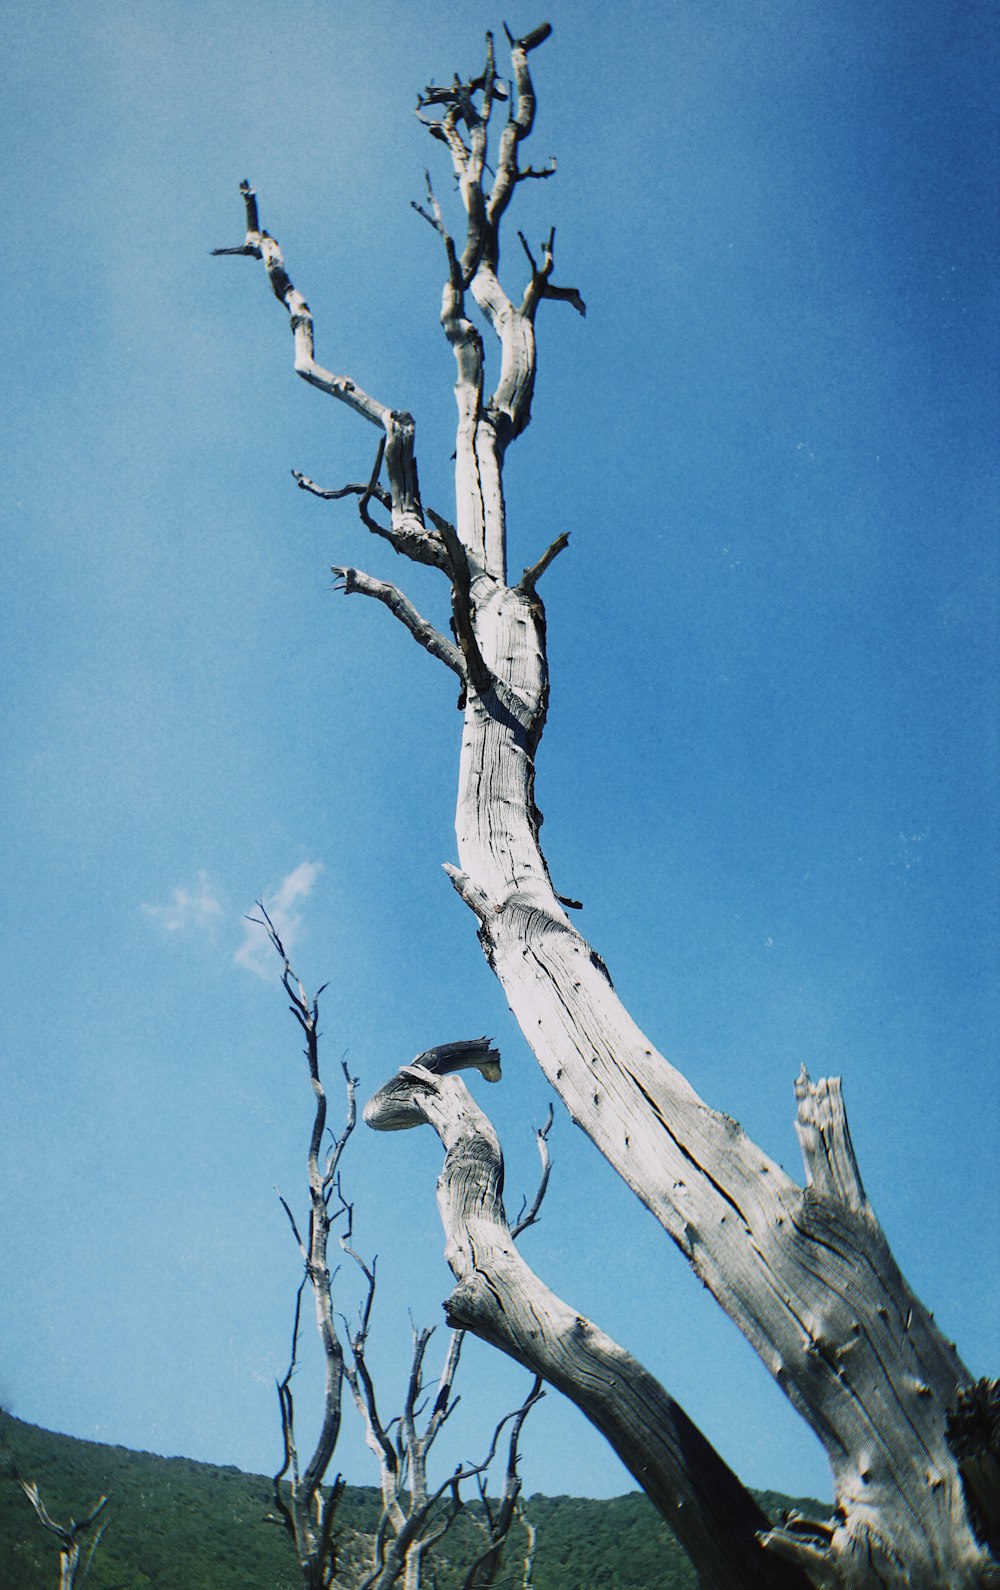 pájaro blanco y negro en la rama de un árbol marrón